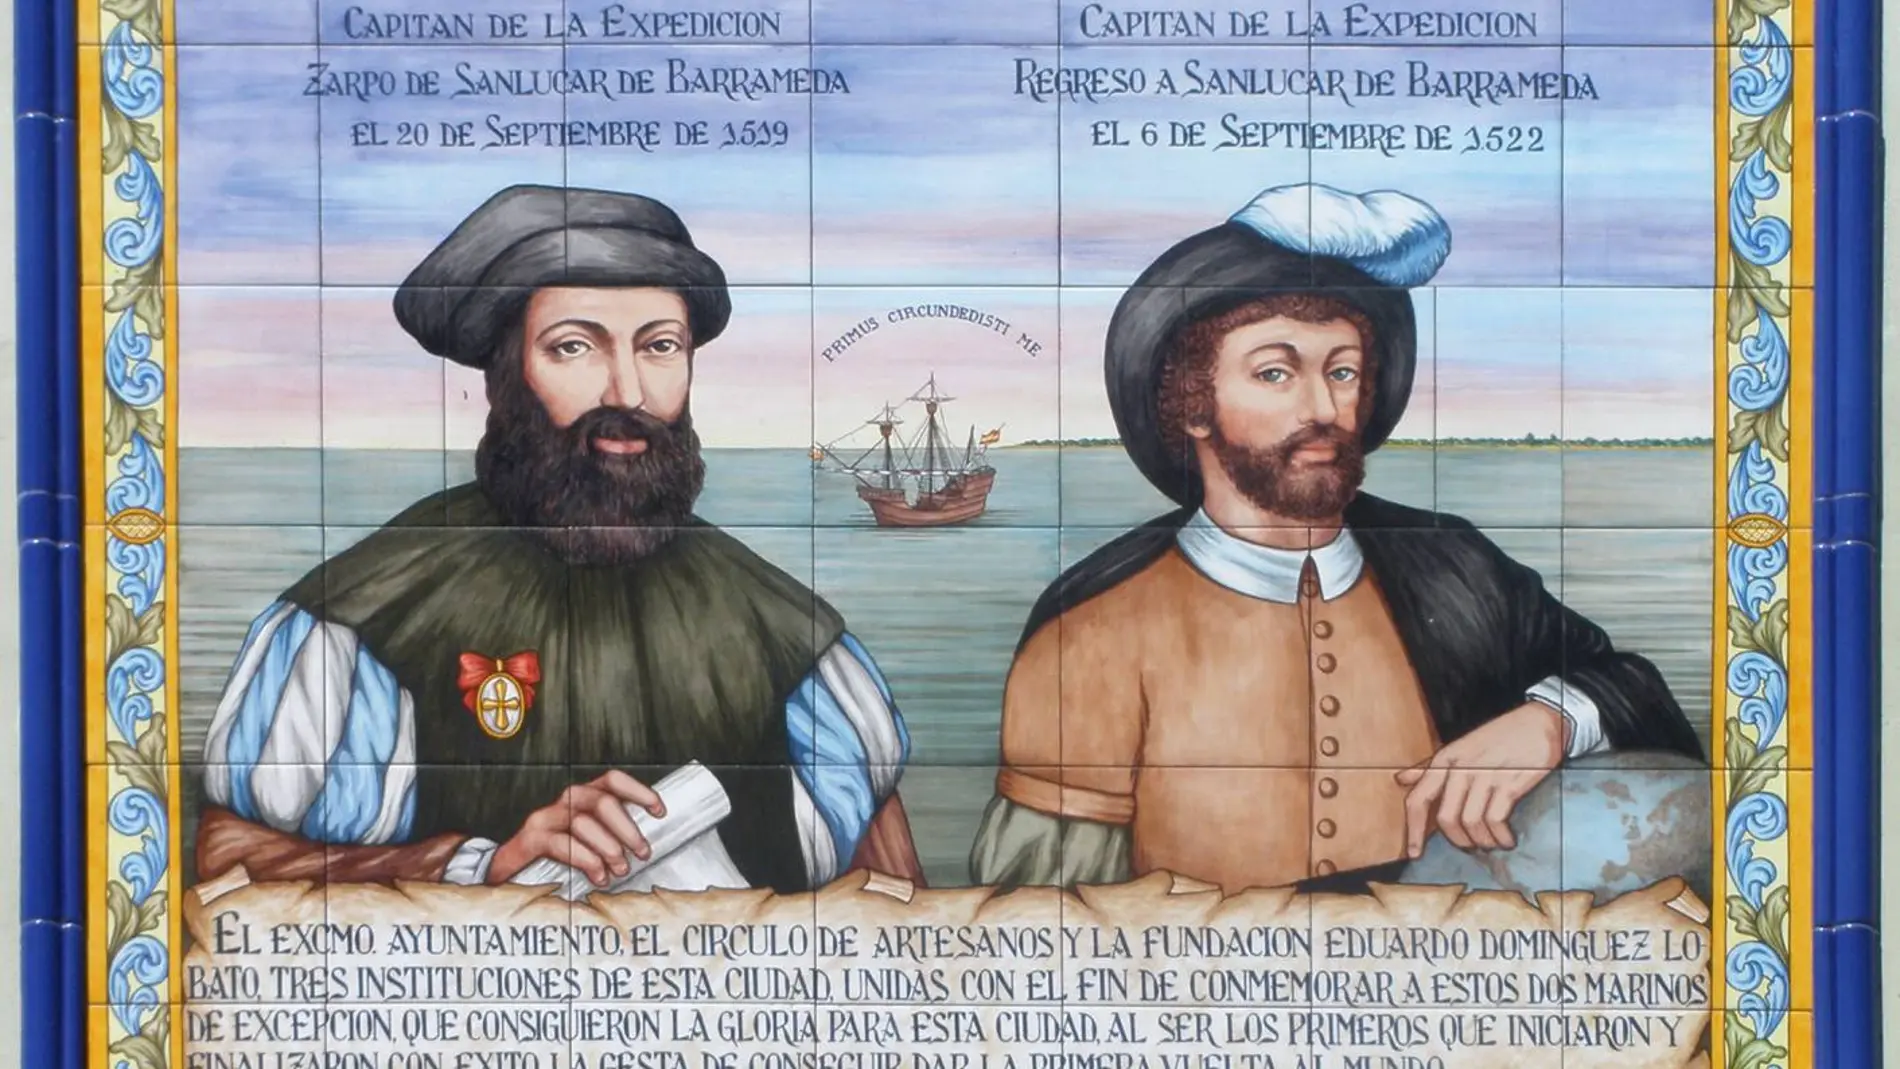 La circunnavegación encabezada por Juan Sebastián Elcano y Fernando de Magallanes zarpó de Sanlúcar de Barrameda en 1519